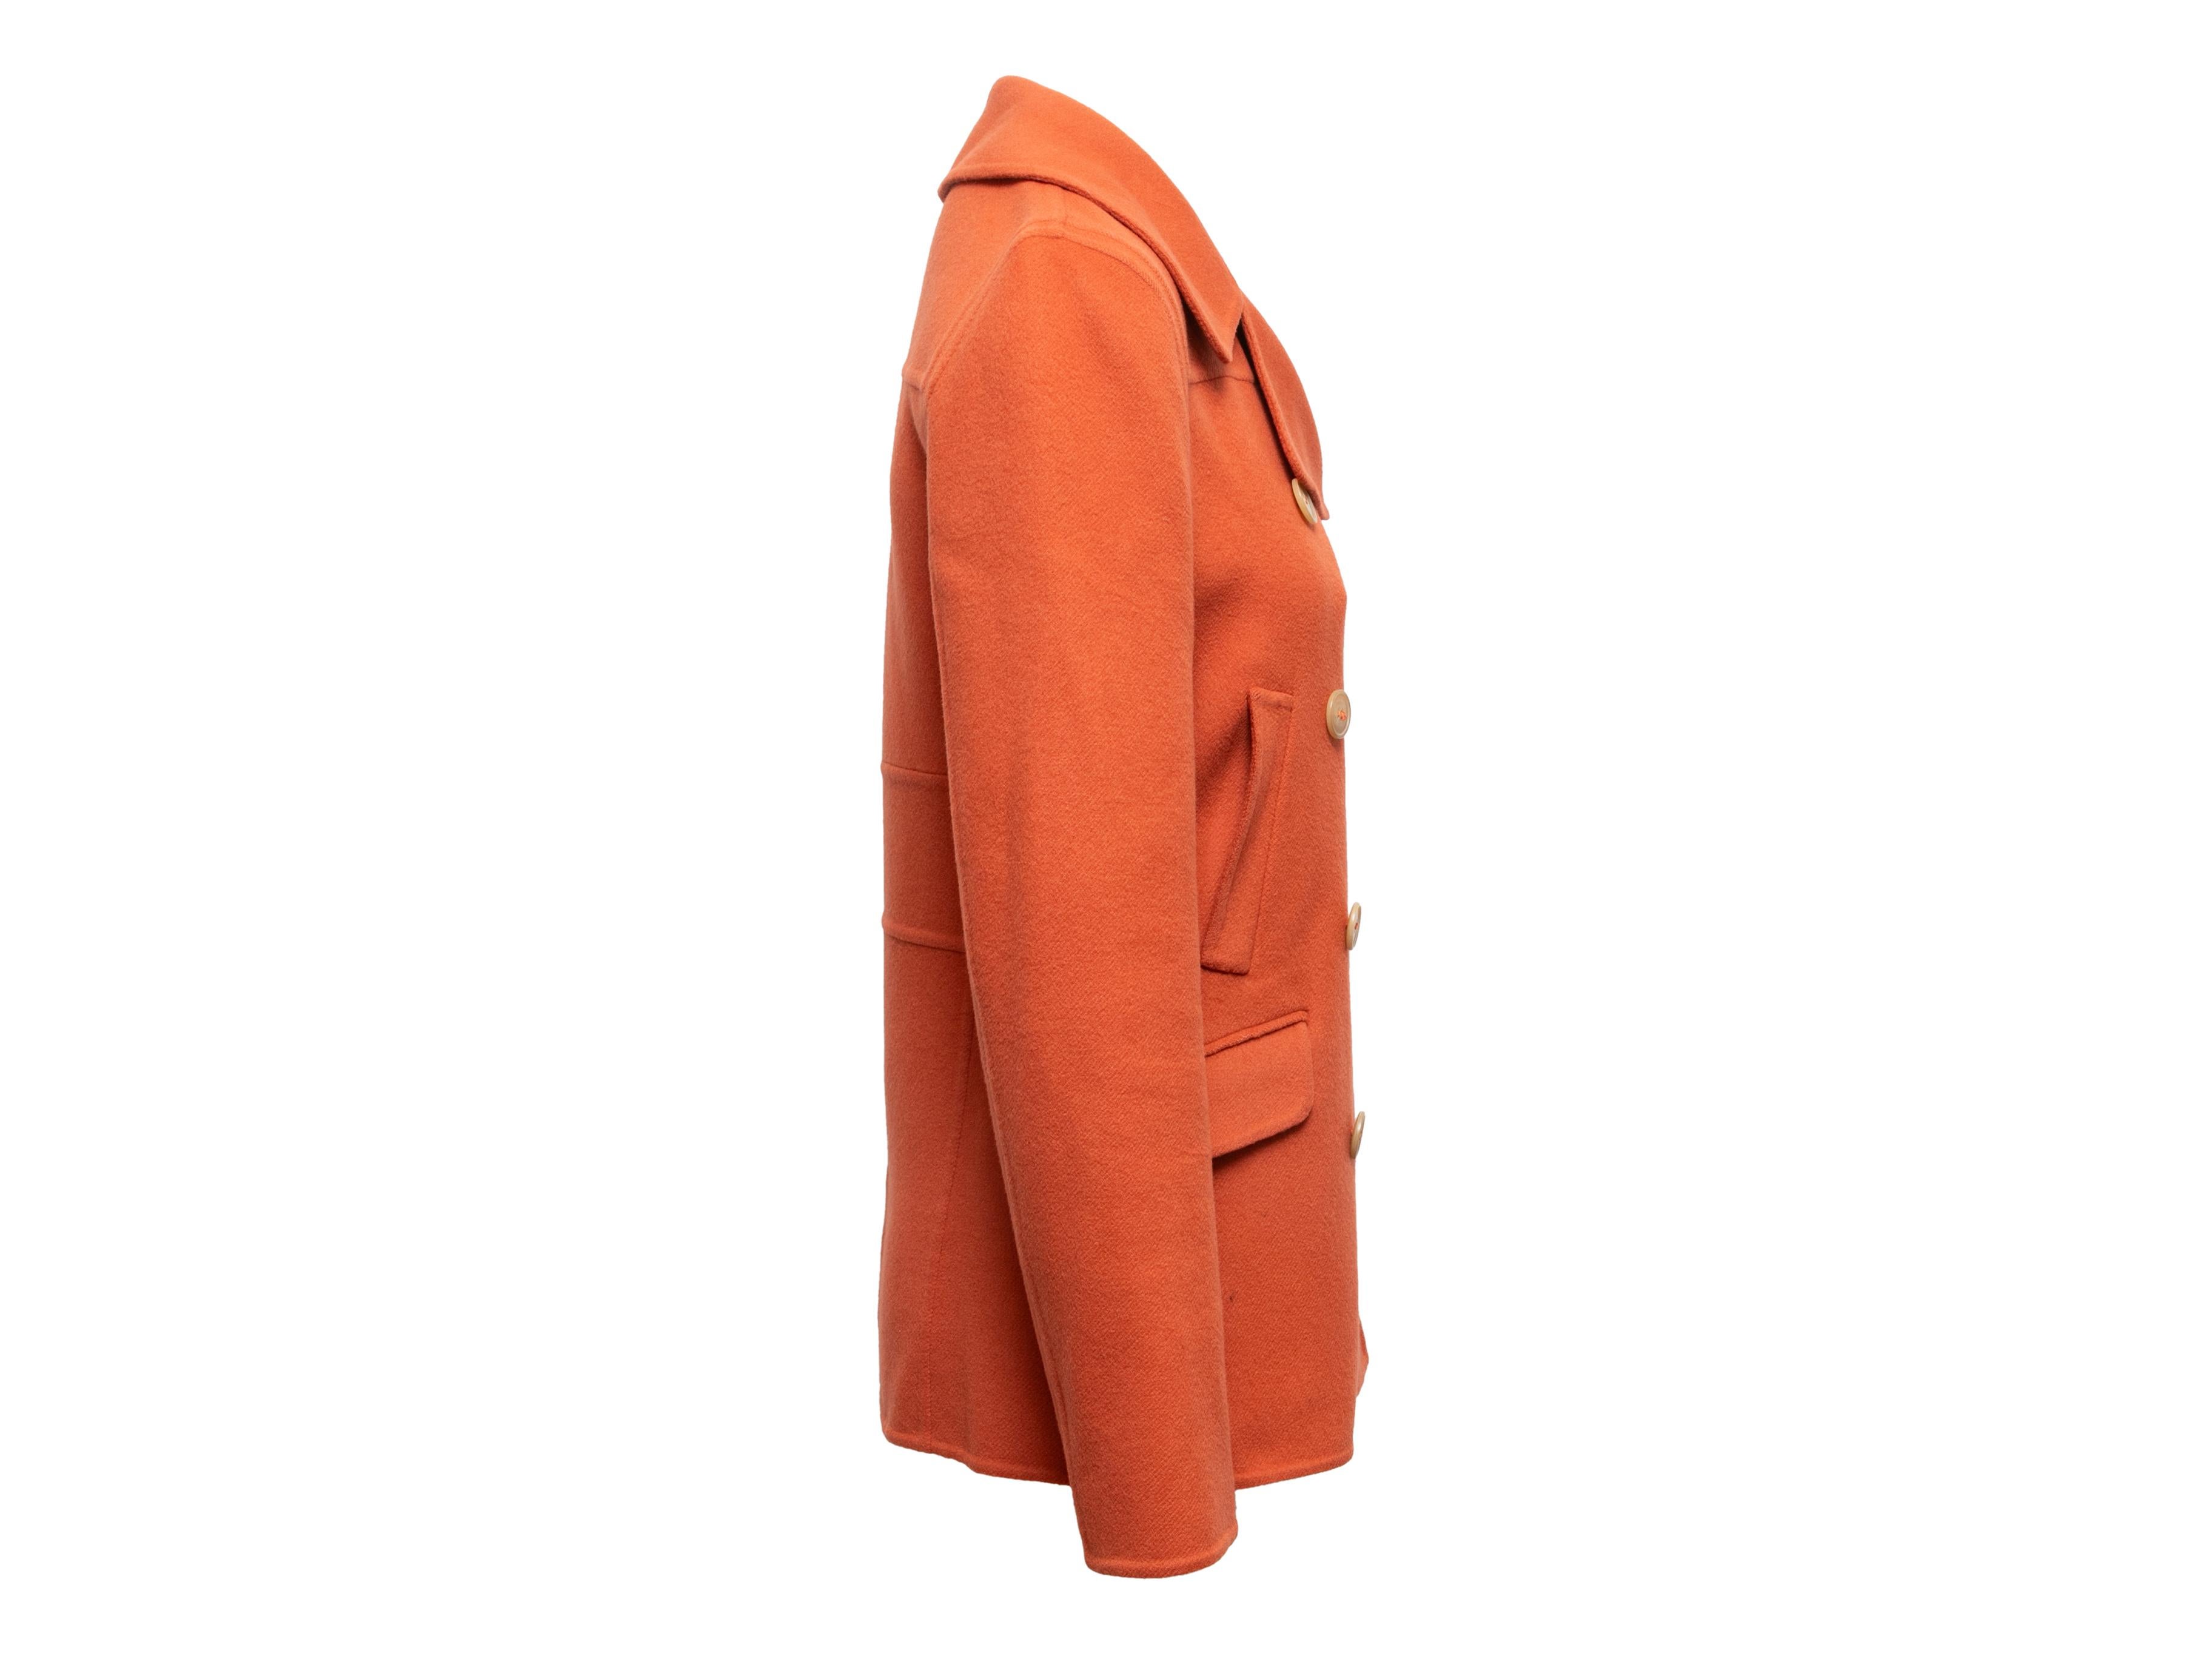 Caban en cachemire orange à double boutonnage par Calvin Klein Collectional. Revers cranté. Deux poches sur les hanches. Fermeture par boutons sur le devant. Buste de 30